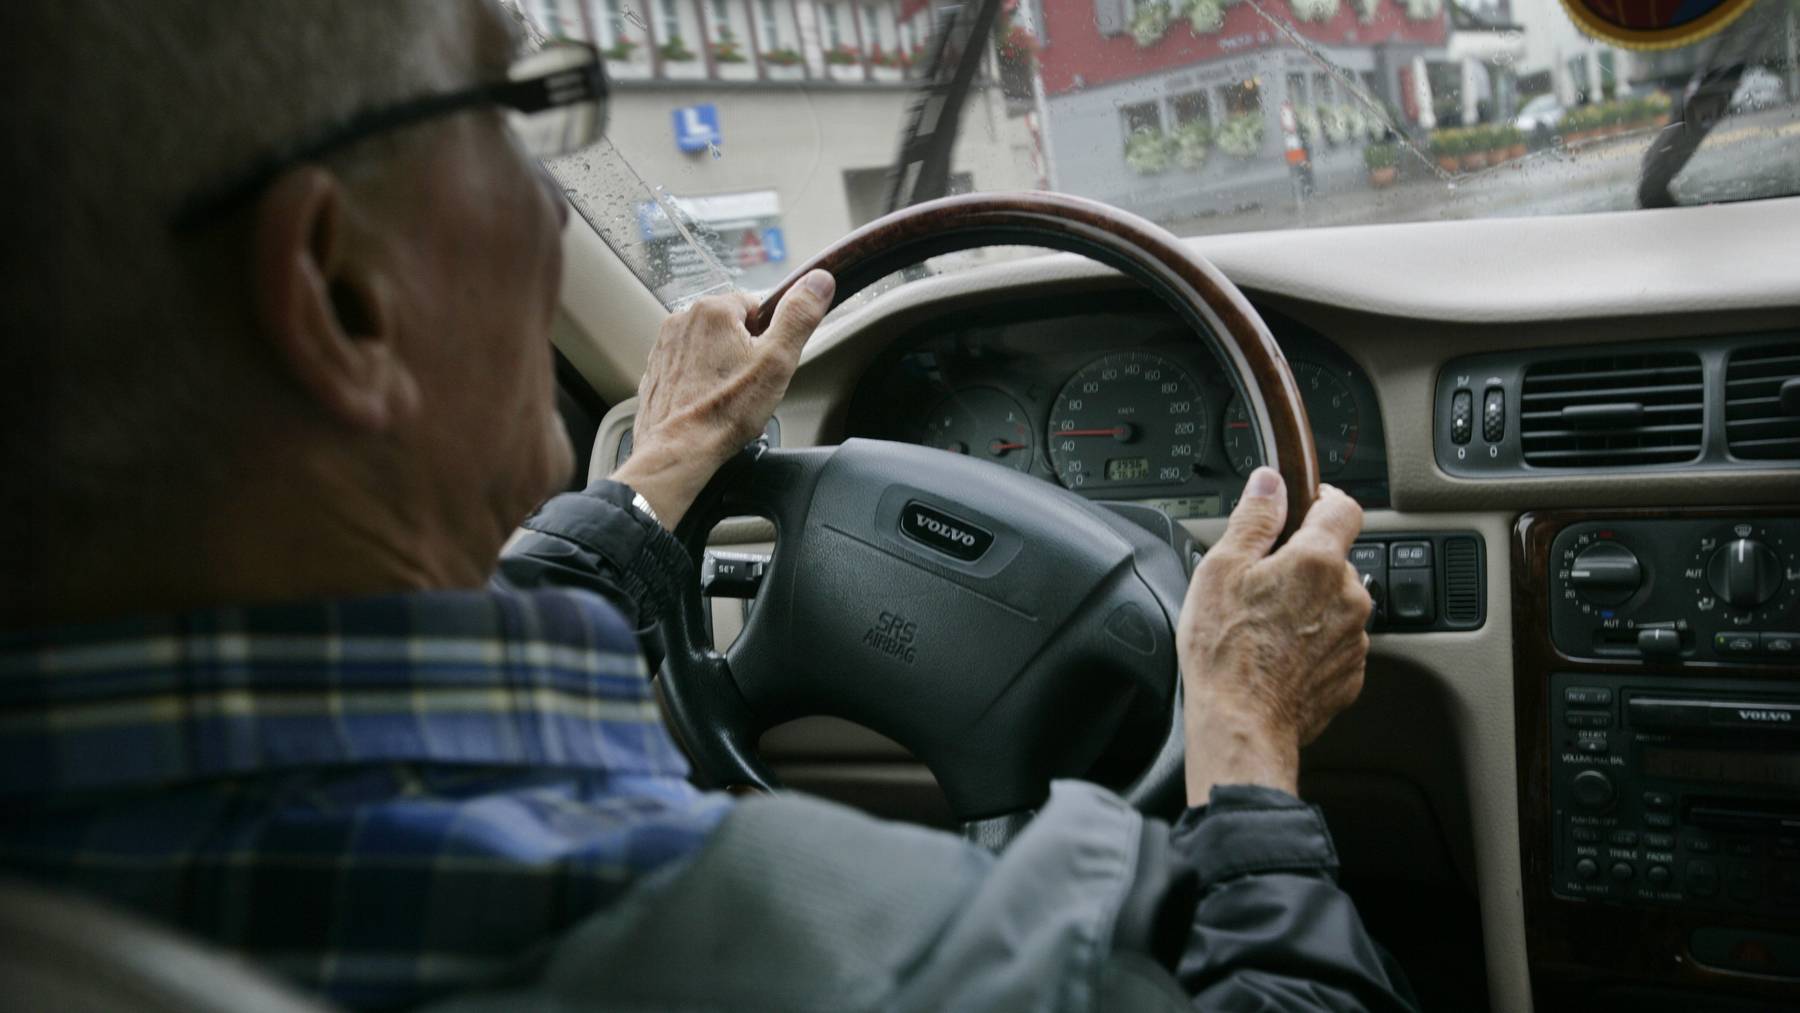 Bereits zum vierten Mal wurde der 65-jährige beim Autofahren ohne Führerschein erwischt.